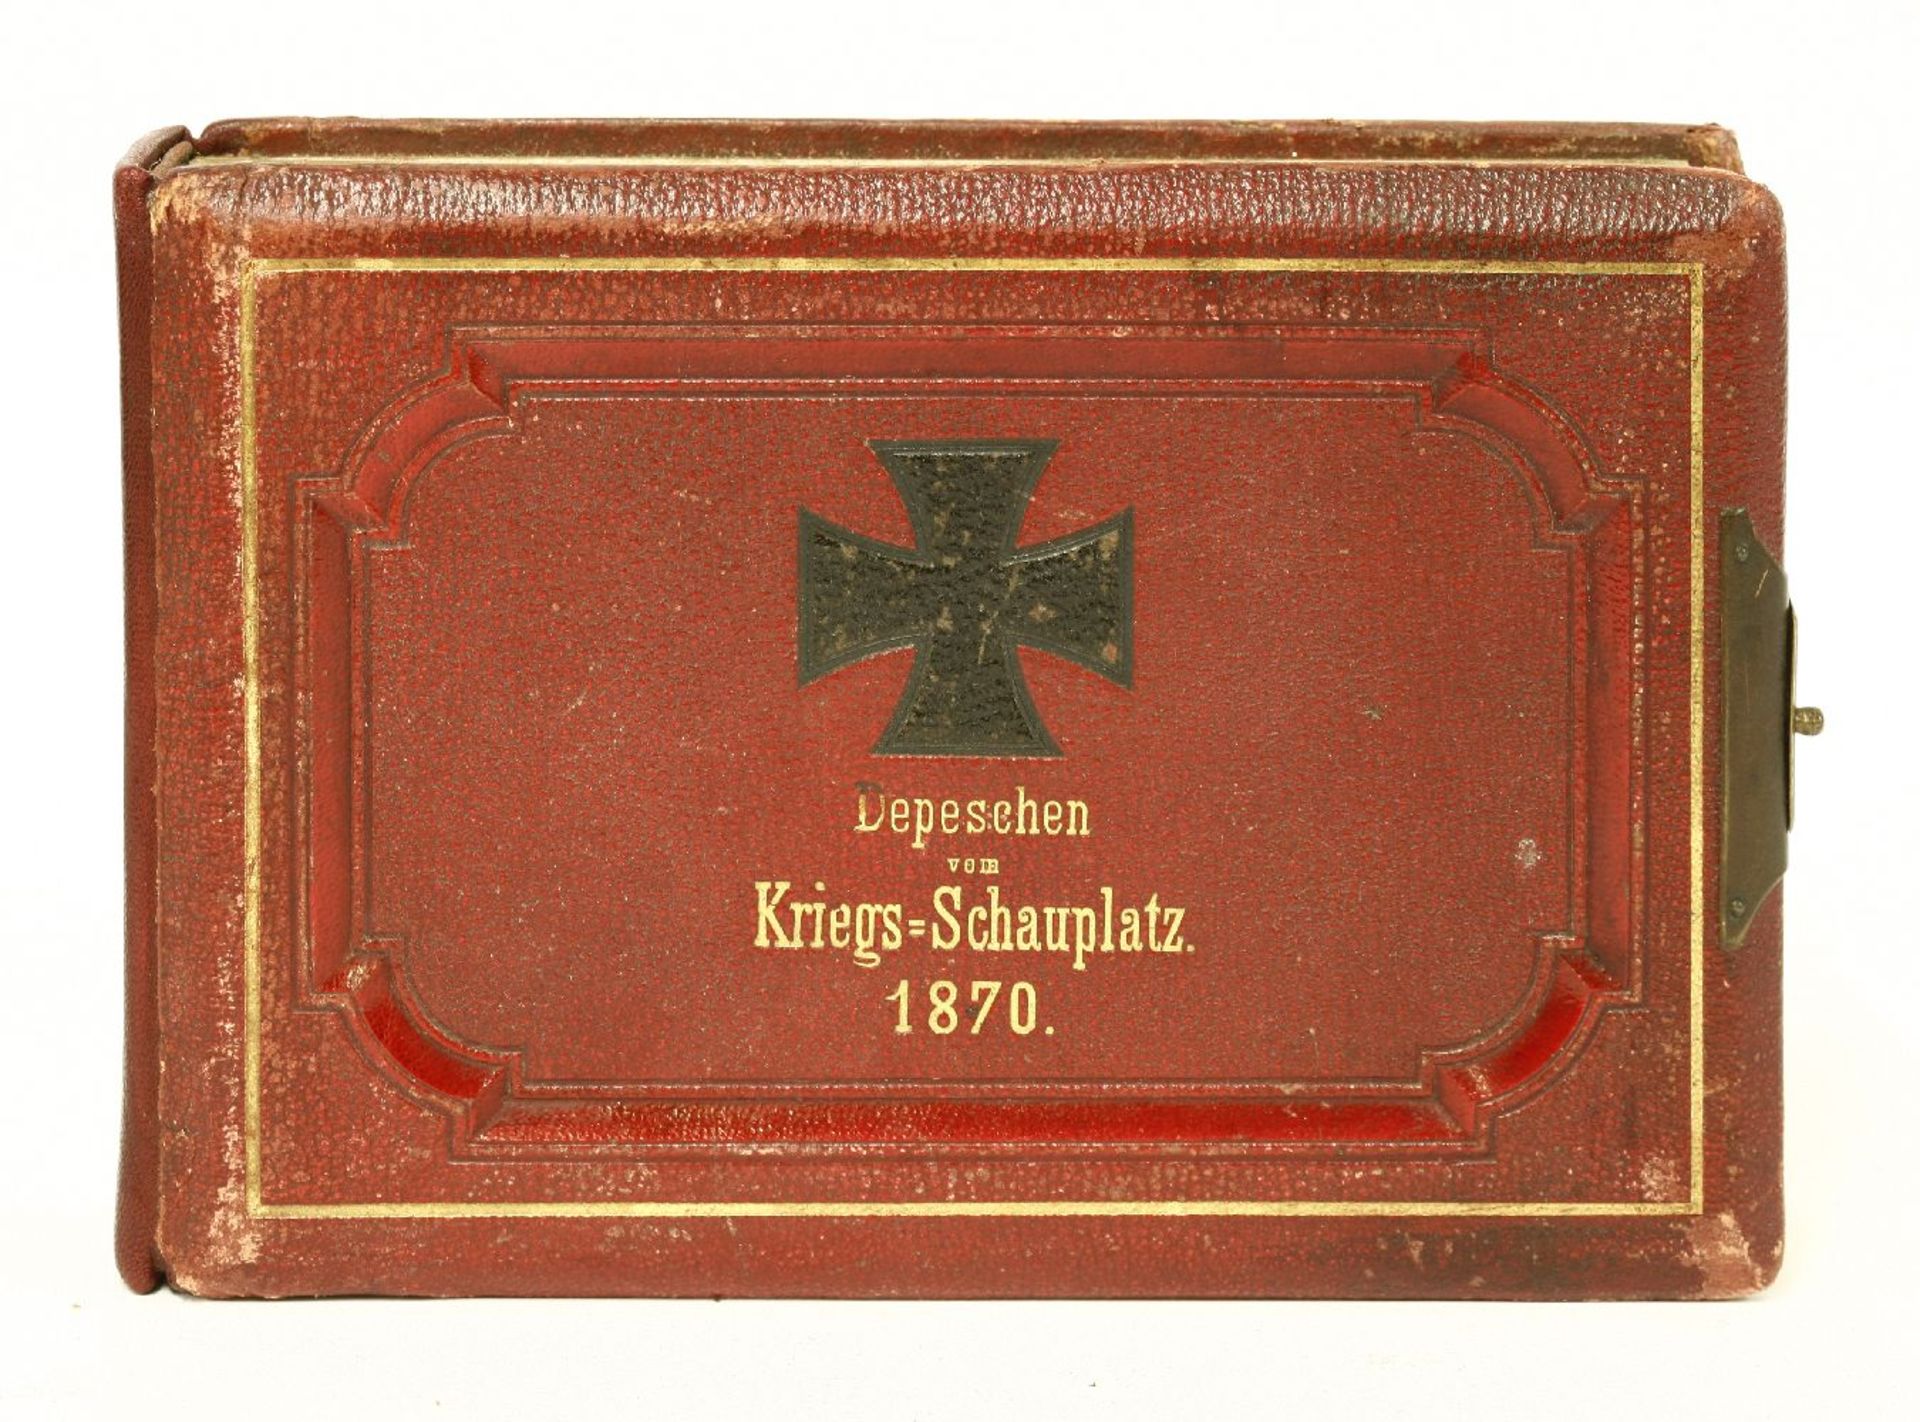 MILITARY: Depesehen Vom Kriegs-Schauplatz 1870. Mainz, 1870, 1st. edn. 96 German despatches from the